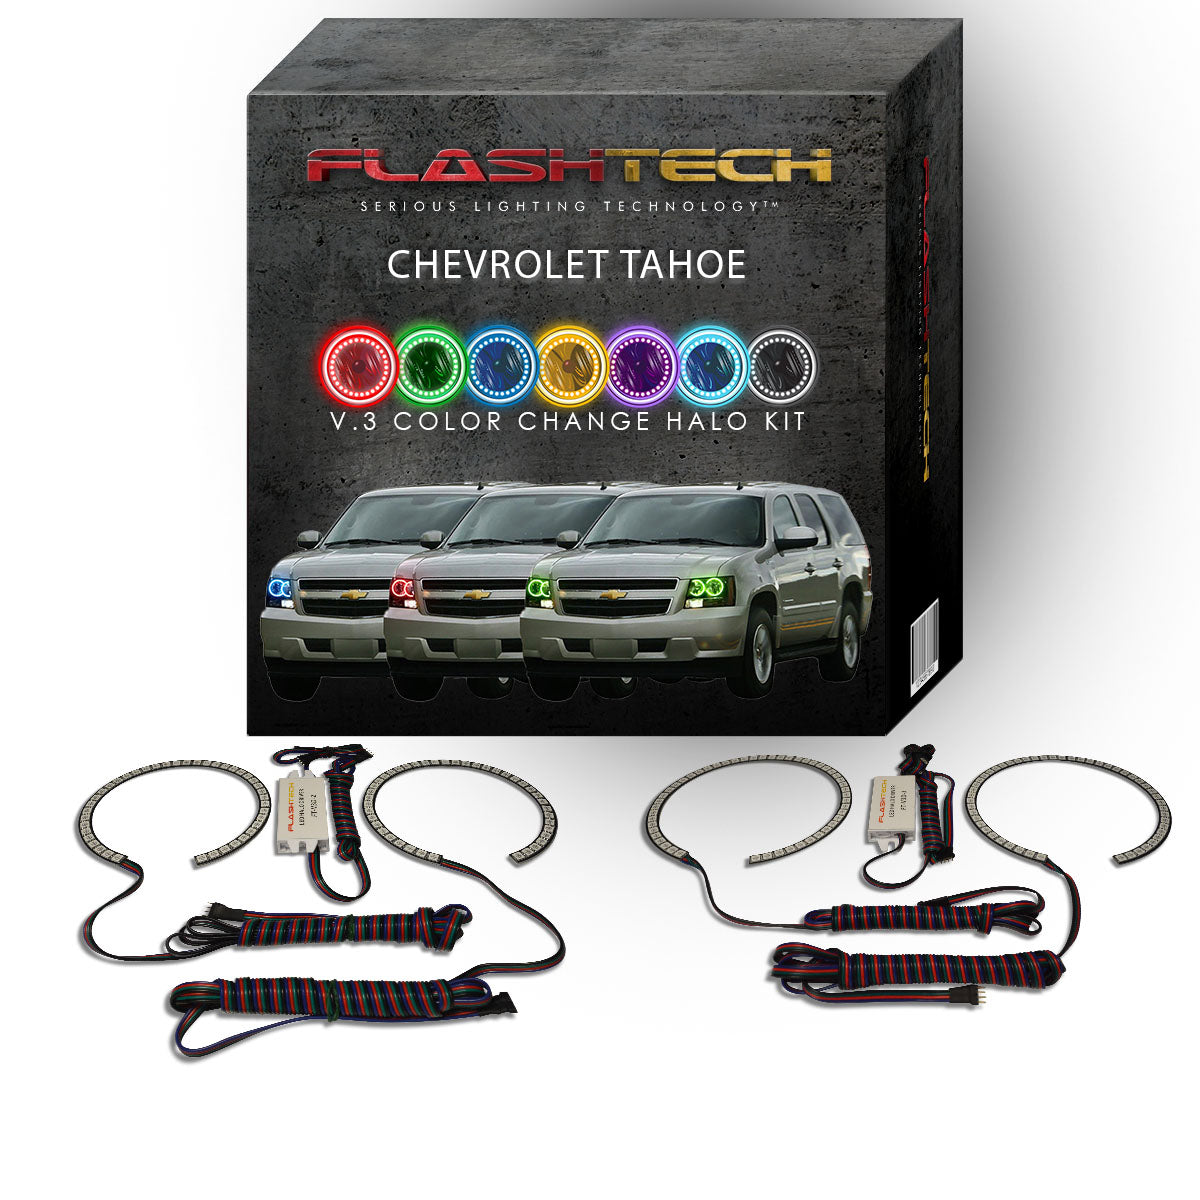 Chevrolet-Tahoe-2007, 2008, 2009, 2010, 2011, 2012, 2013-LED-Halo-Headlights-RGB-No Remote-CY-TA0713-V3H